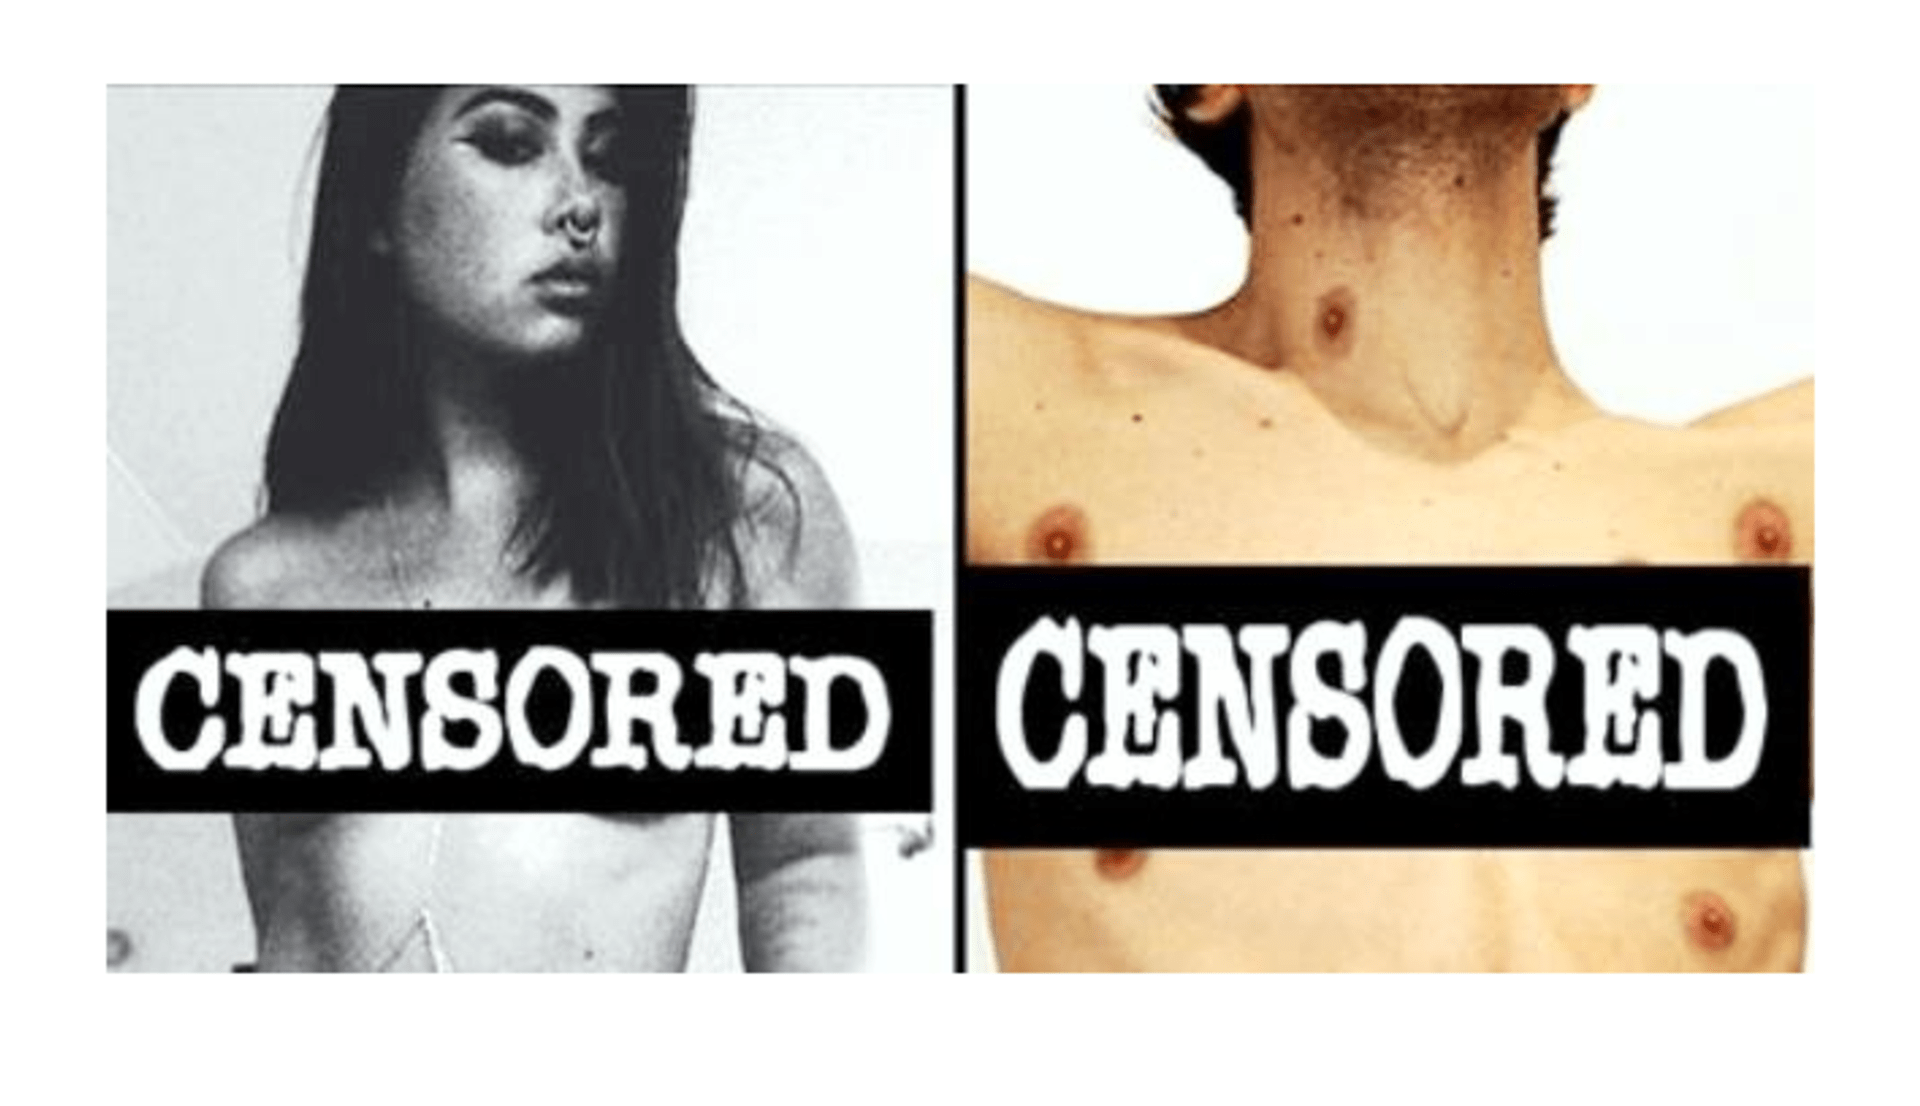 Boj proti cenzuře ženských bradavek